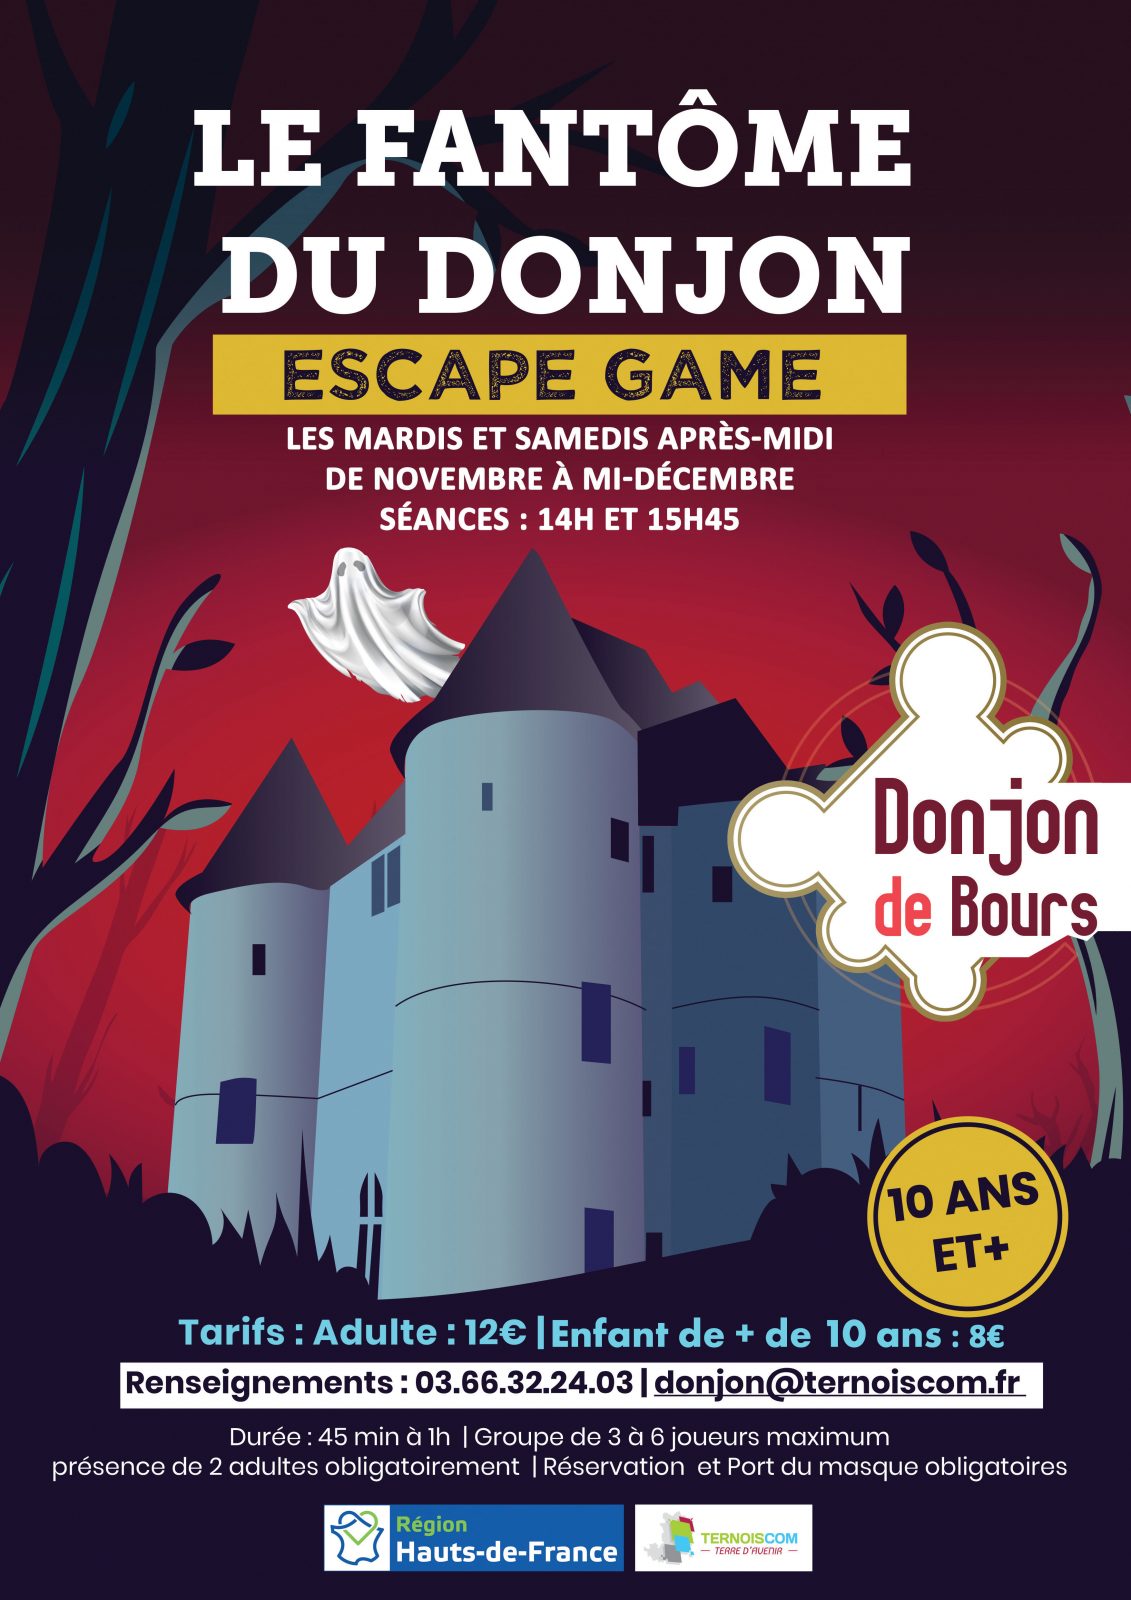 Escape game au Donjon à BOURS - Côte d'Opale - Pour être Mieux